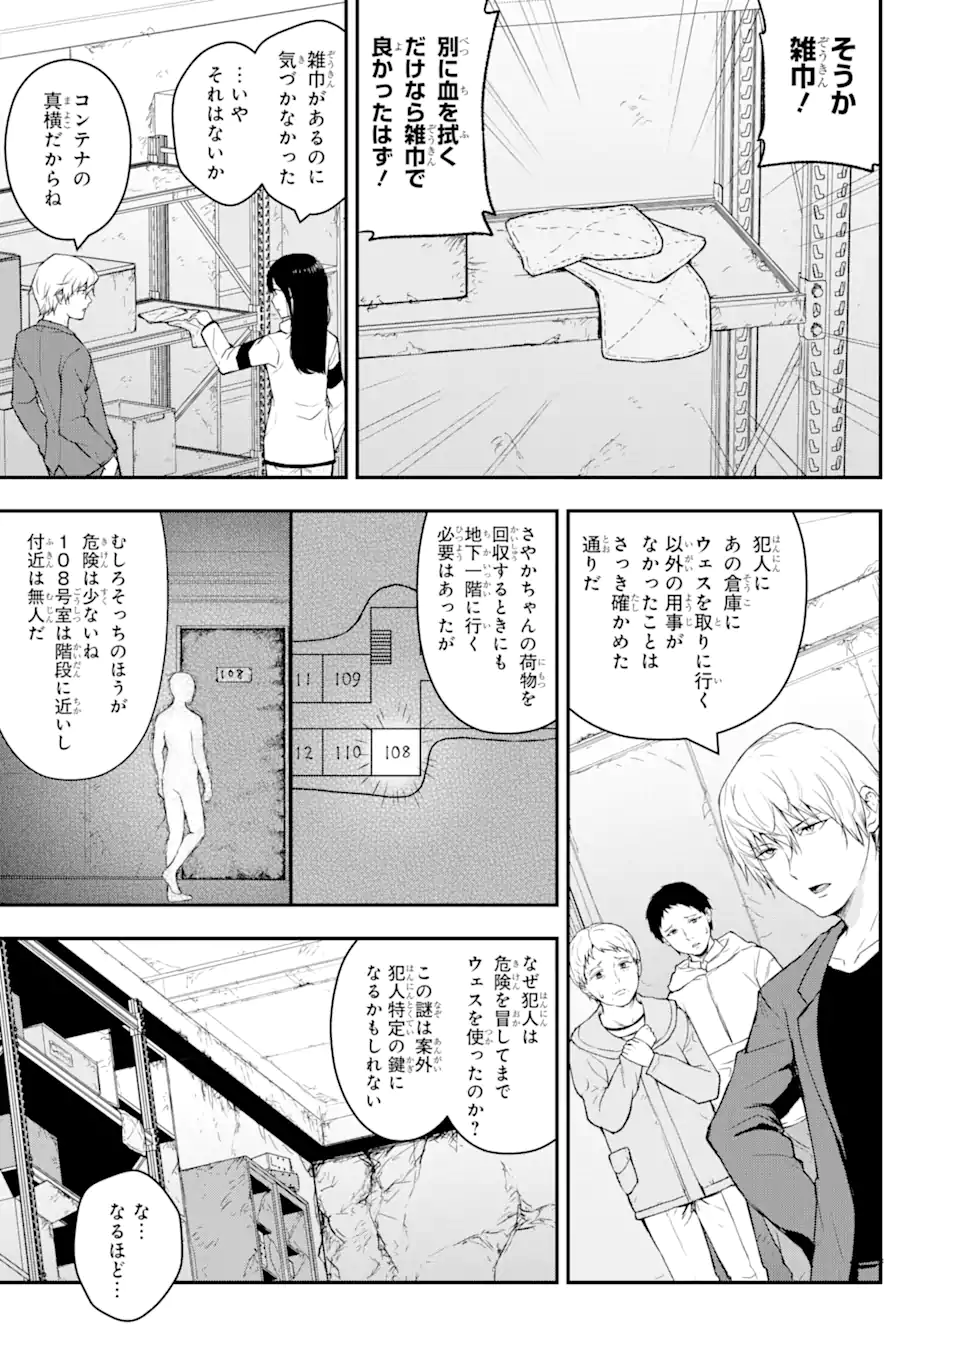 Hakobune – Shinubeki na no wa Dare ka? - Chapter 6.3 - Page 2